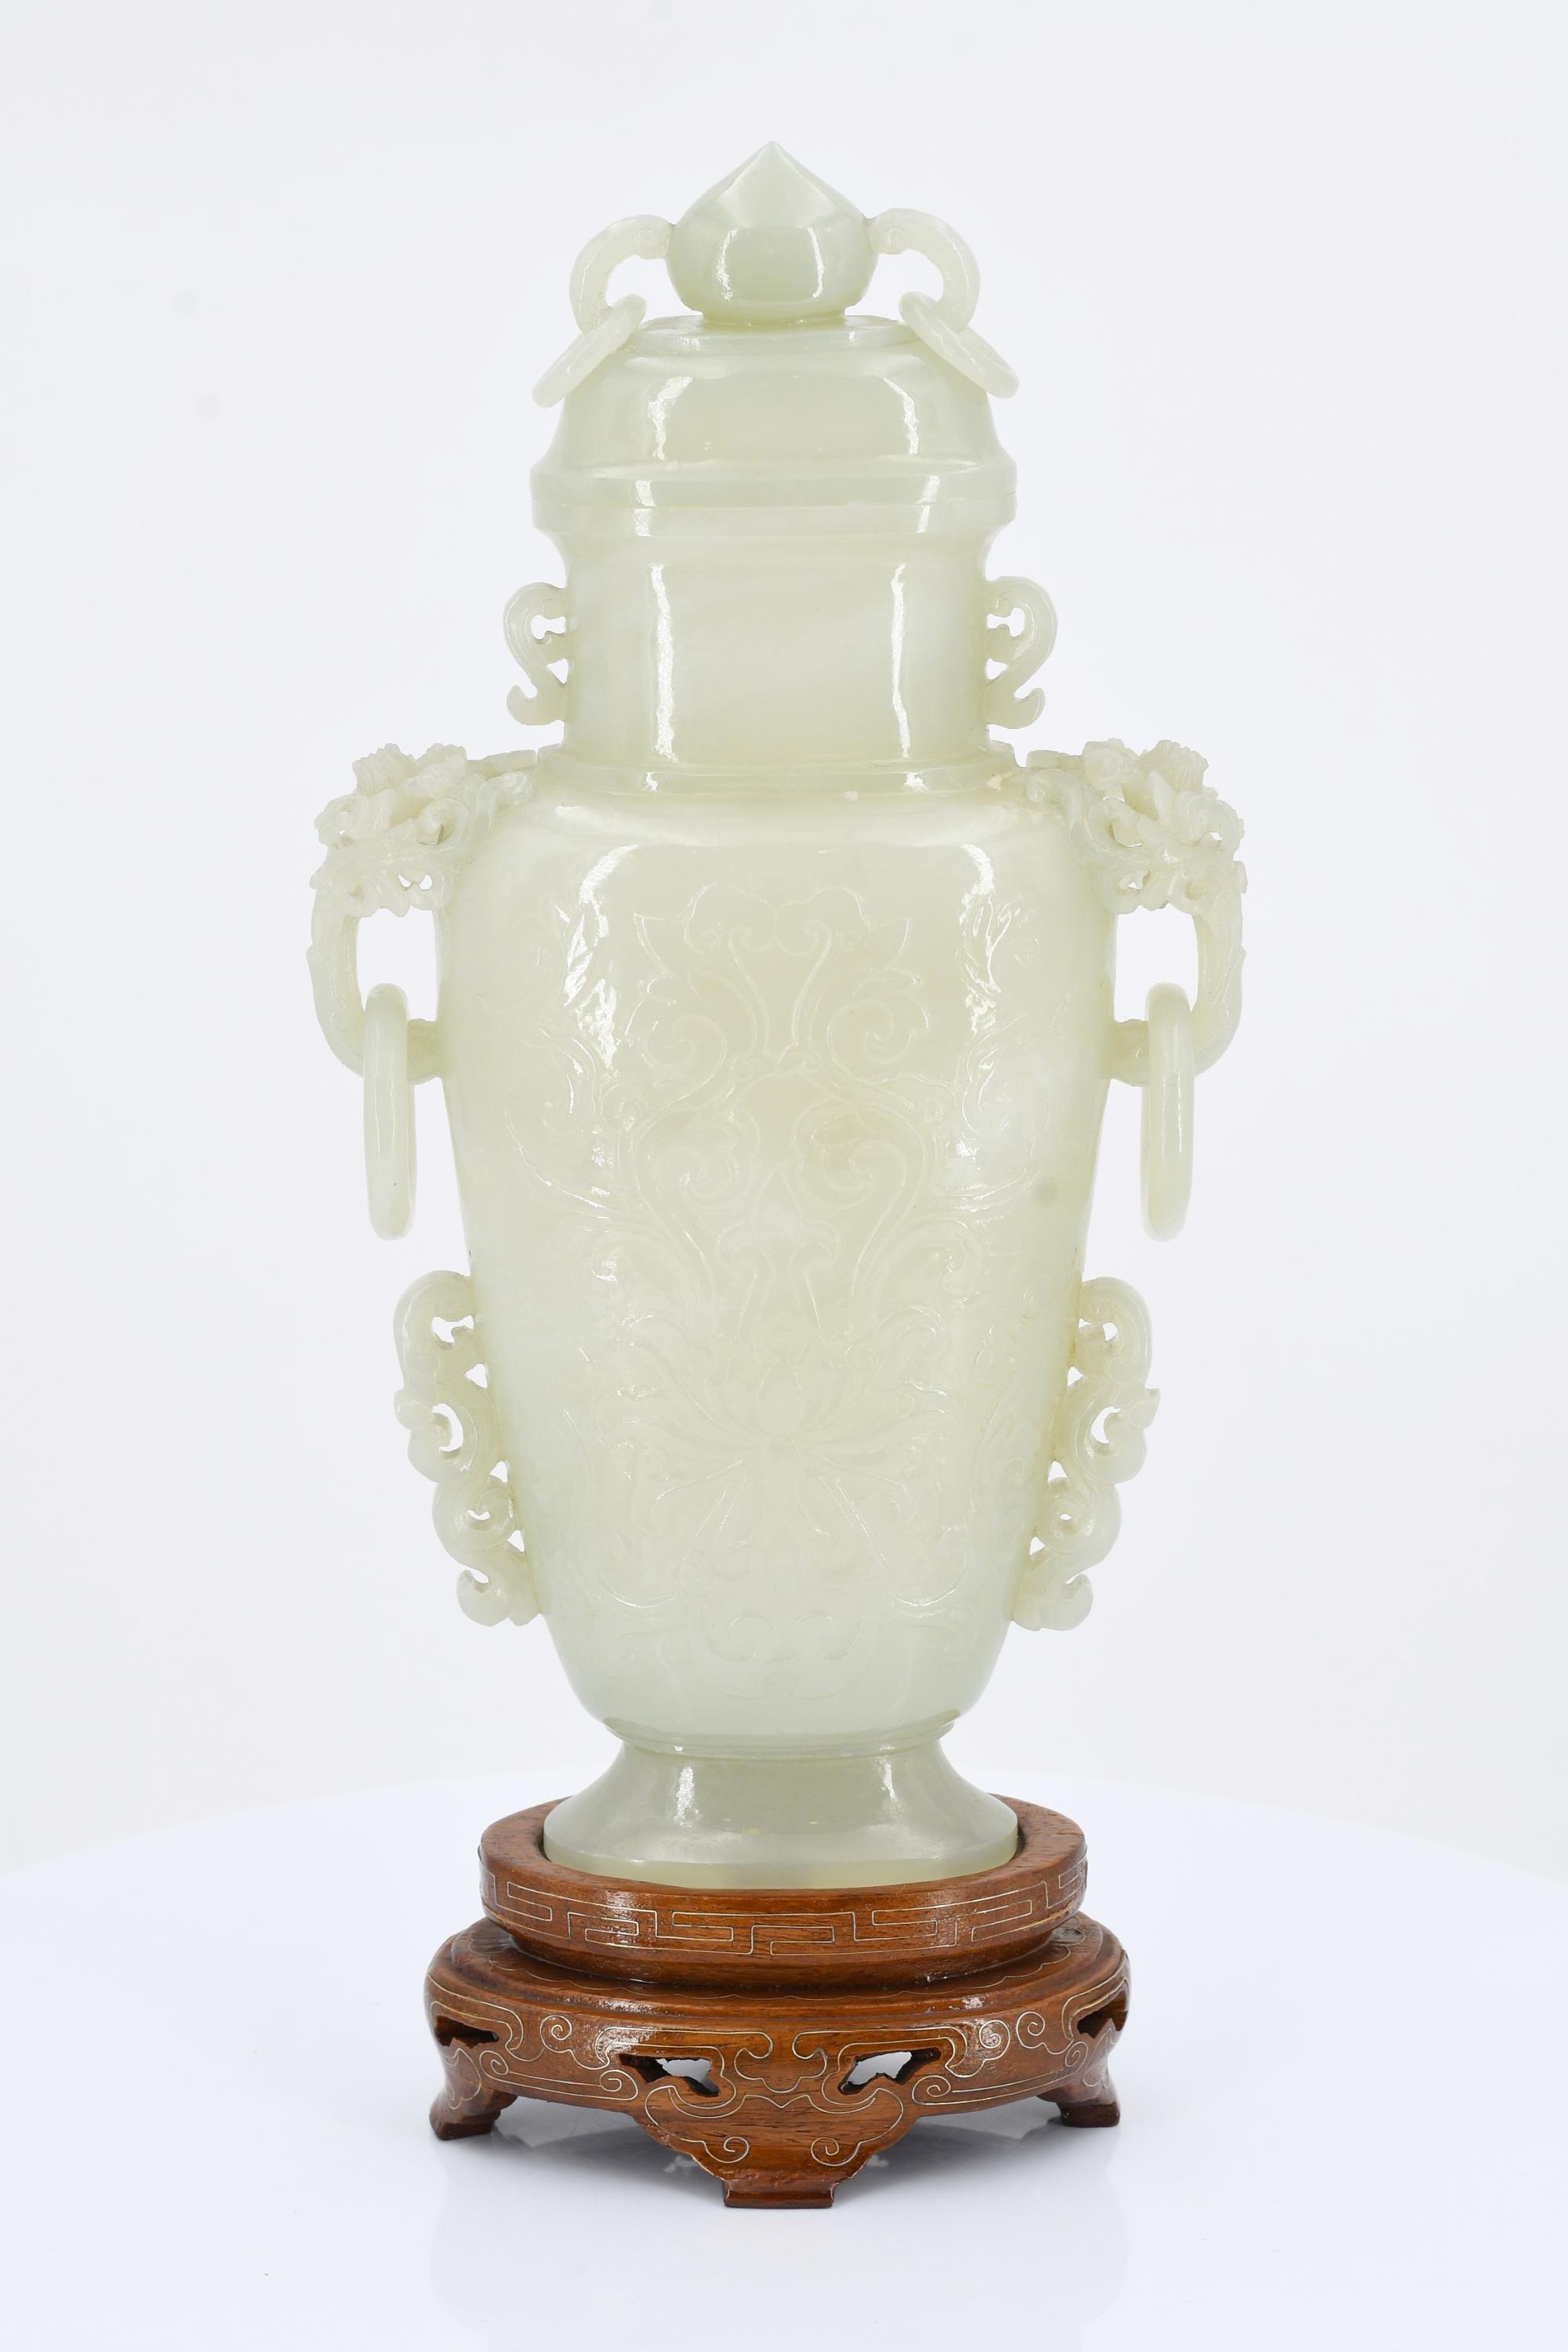 Lidded vase with pedestal - Image 2 of 7